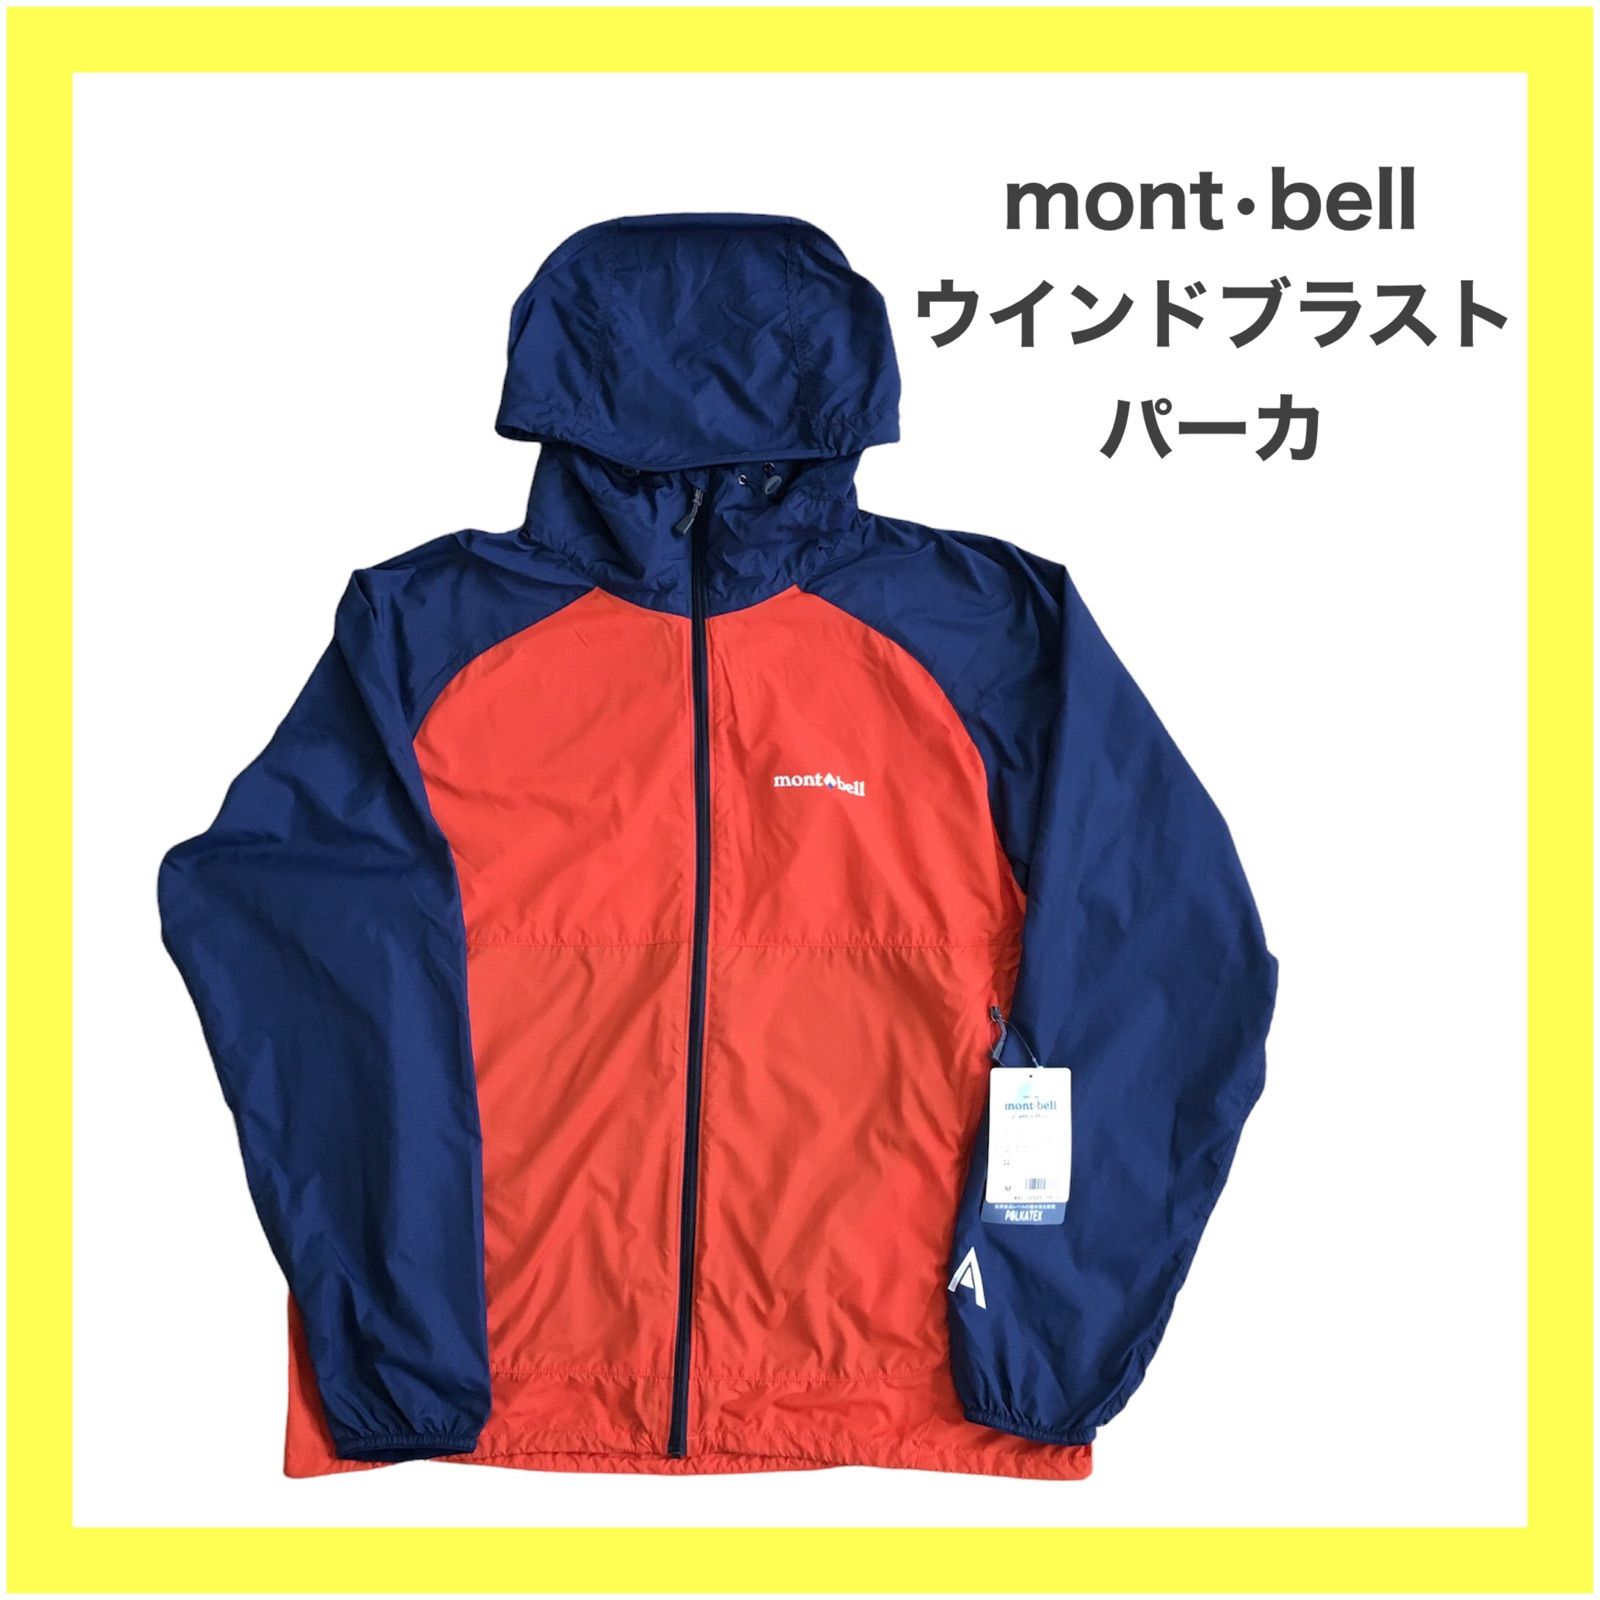 mont-bell モンベル ウインドブラストパーカ キャンプ アウトドア